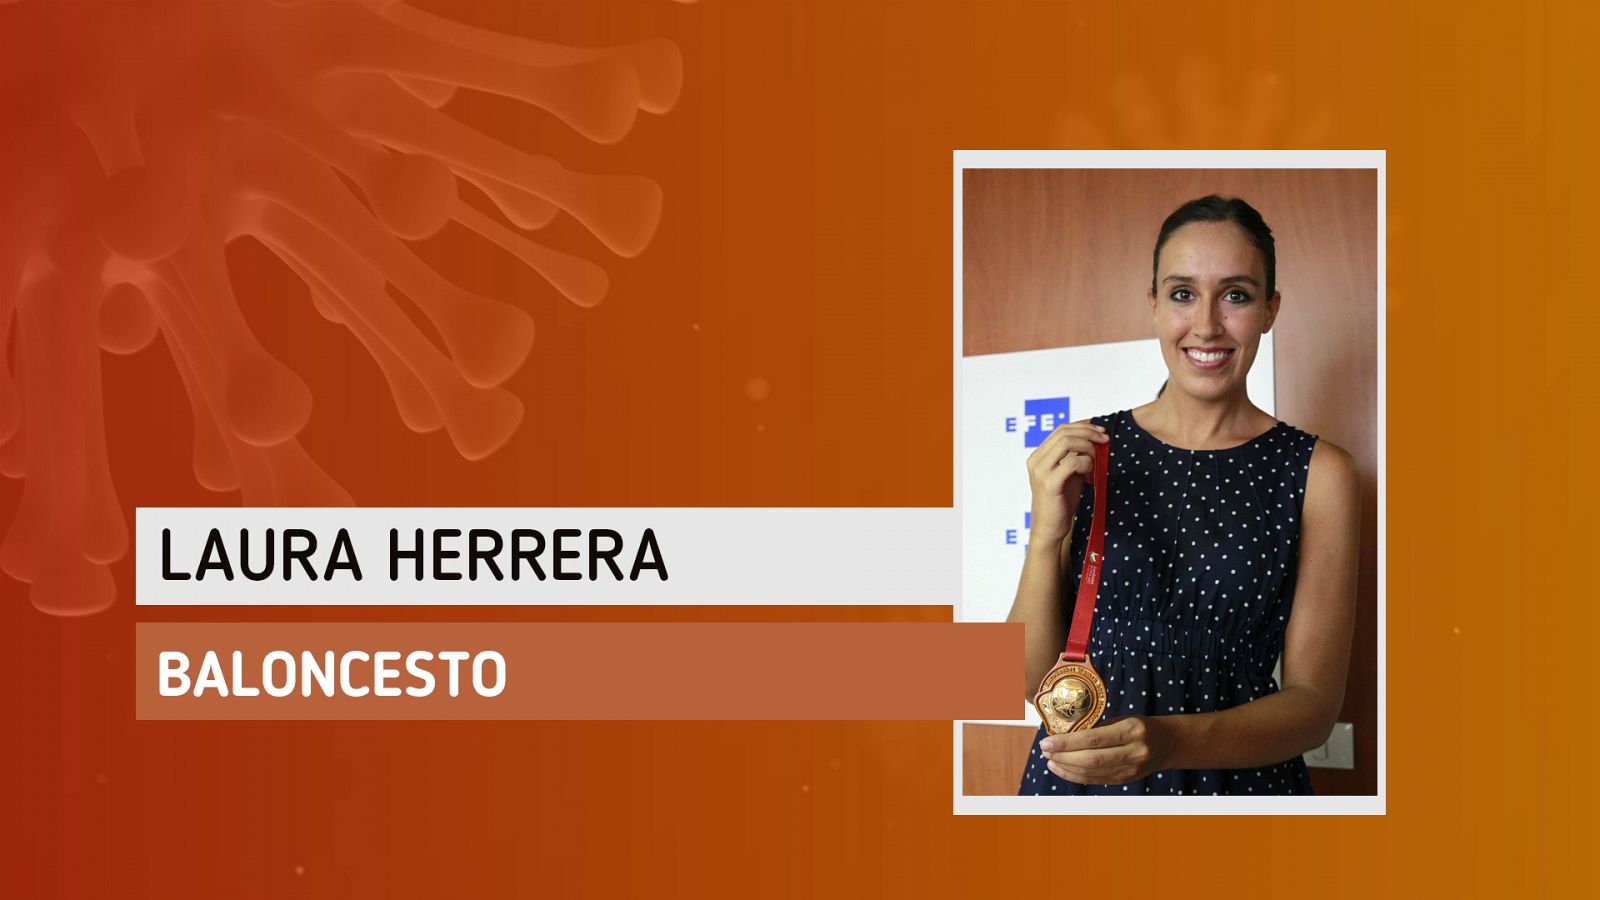 Coronavirus | Laura Herrera: "Espero que con el tiempo no se nos olvide lo bueno de la gente"